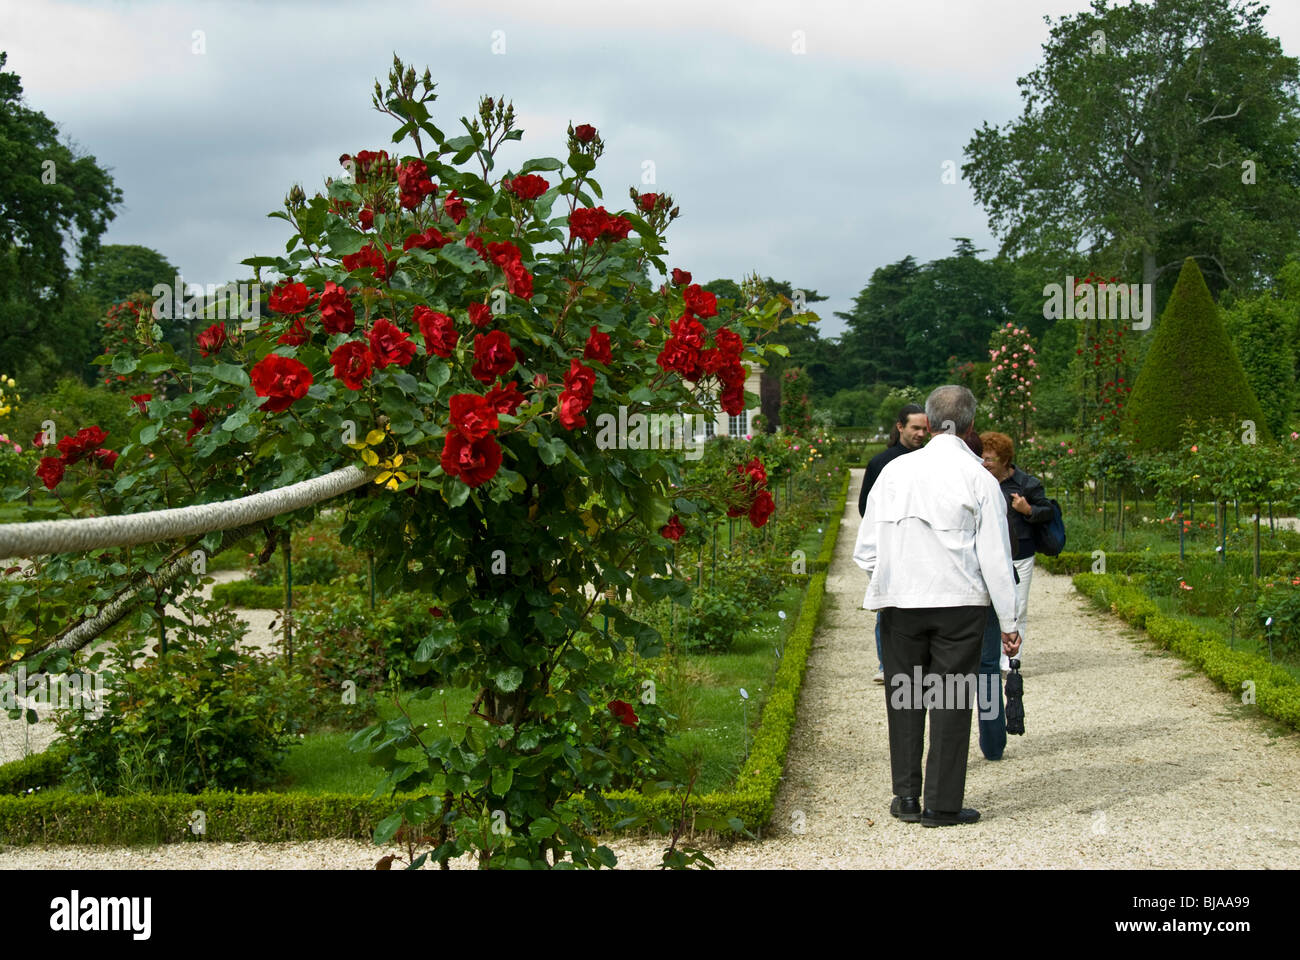 Paris, France, Public Parks, Group of People Visiting Jardin de Bagatelle Rose Garden in Boulogne Park, Stock Photo